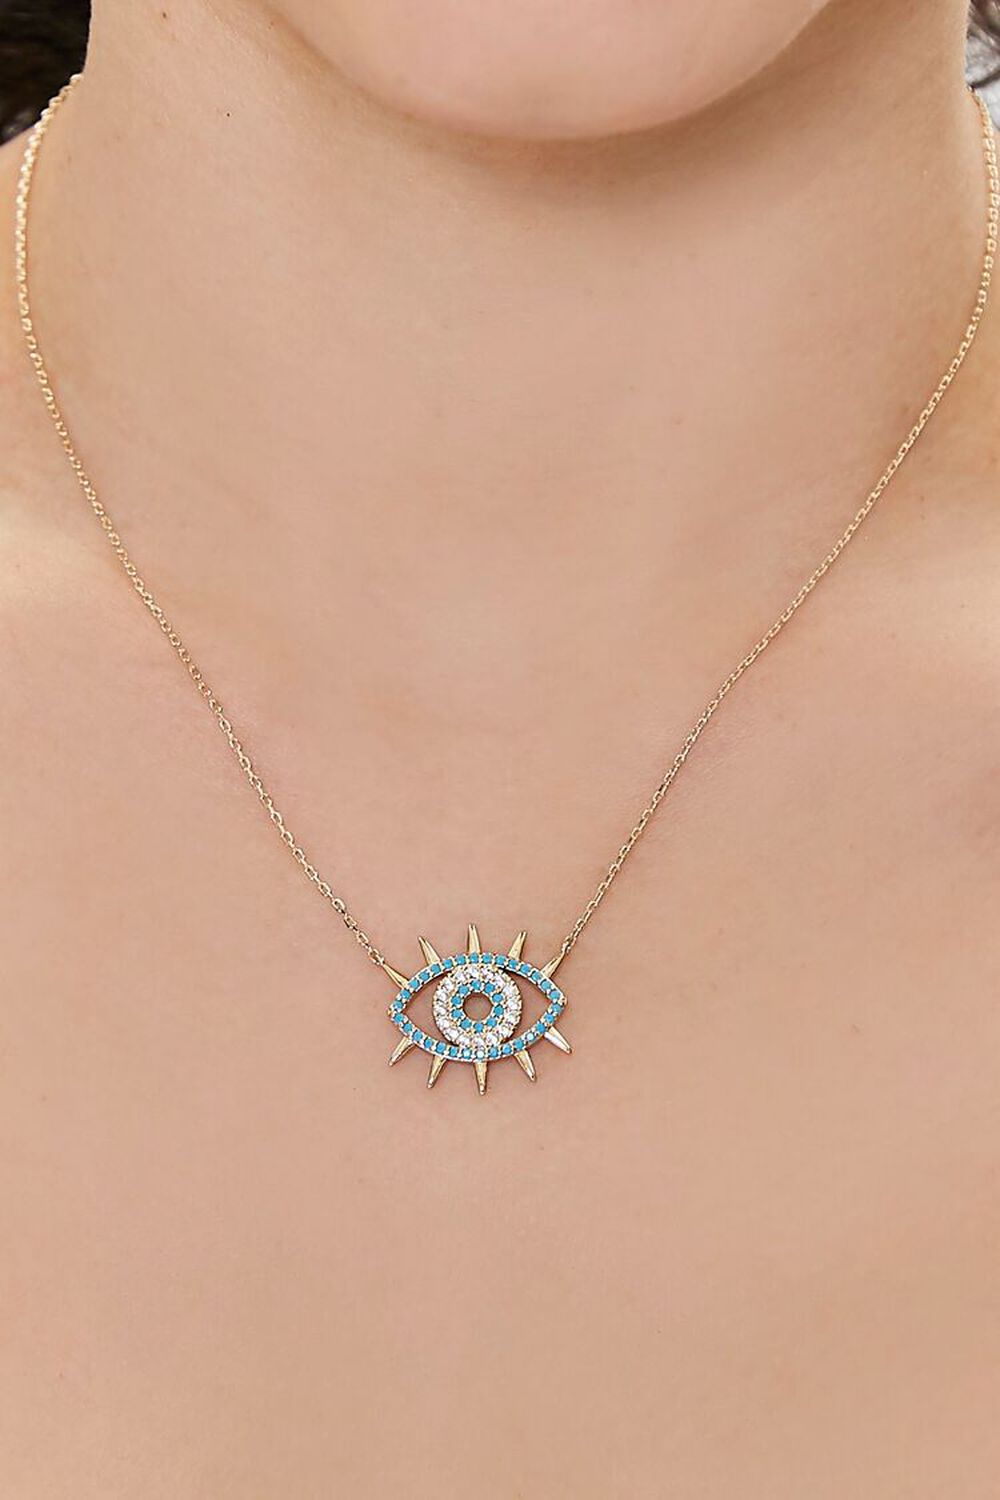 GOLD/TURQUOISE Rhinestone Evil Eye Chain Necklace, image 1